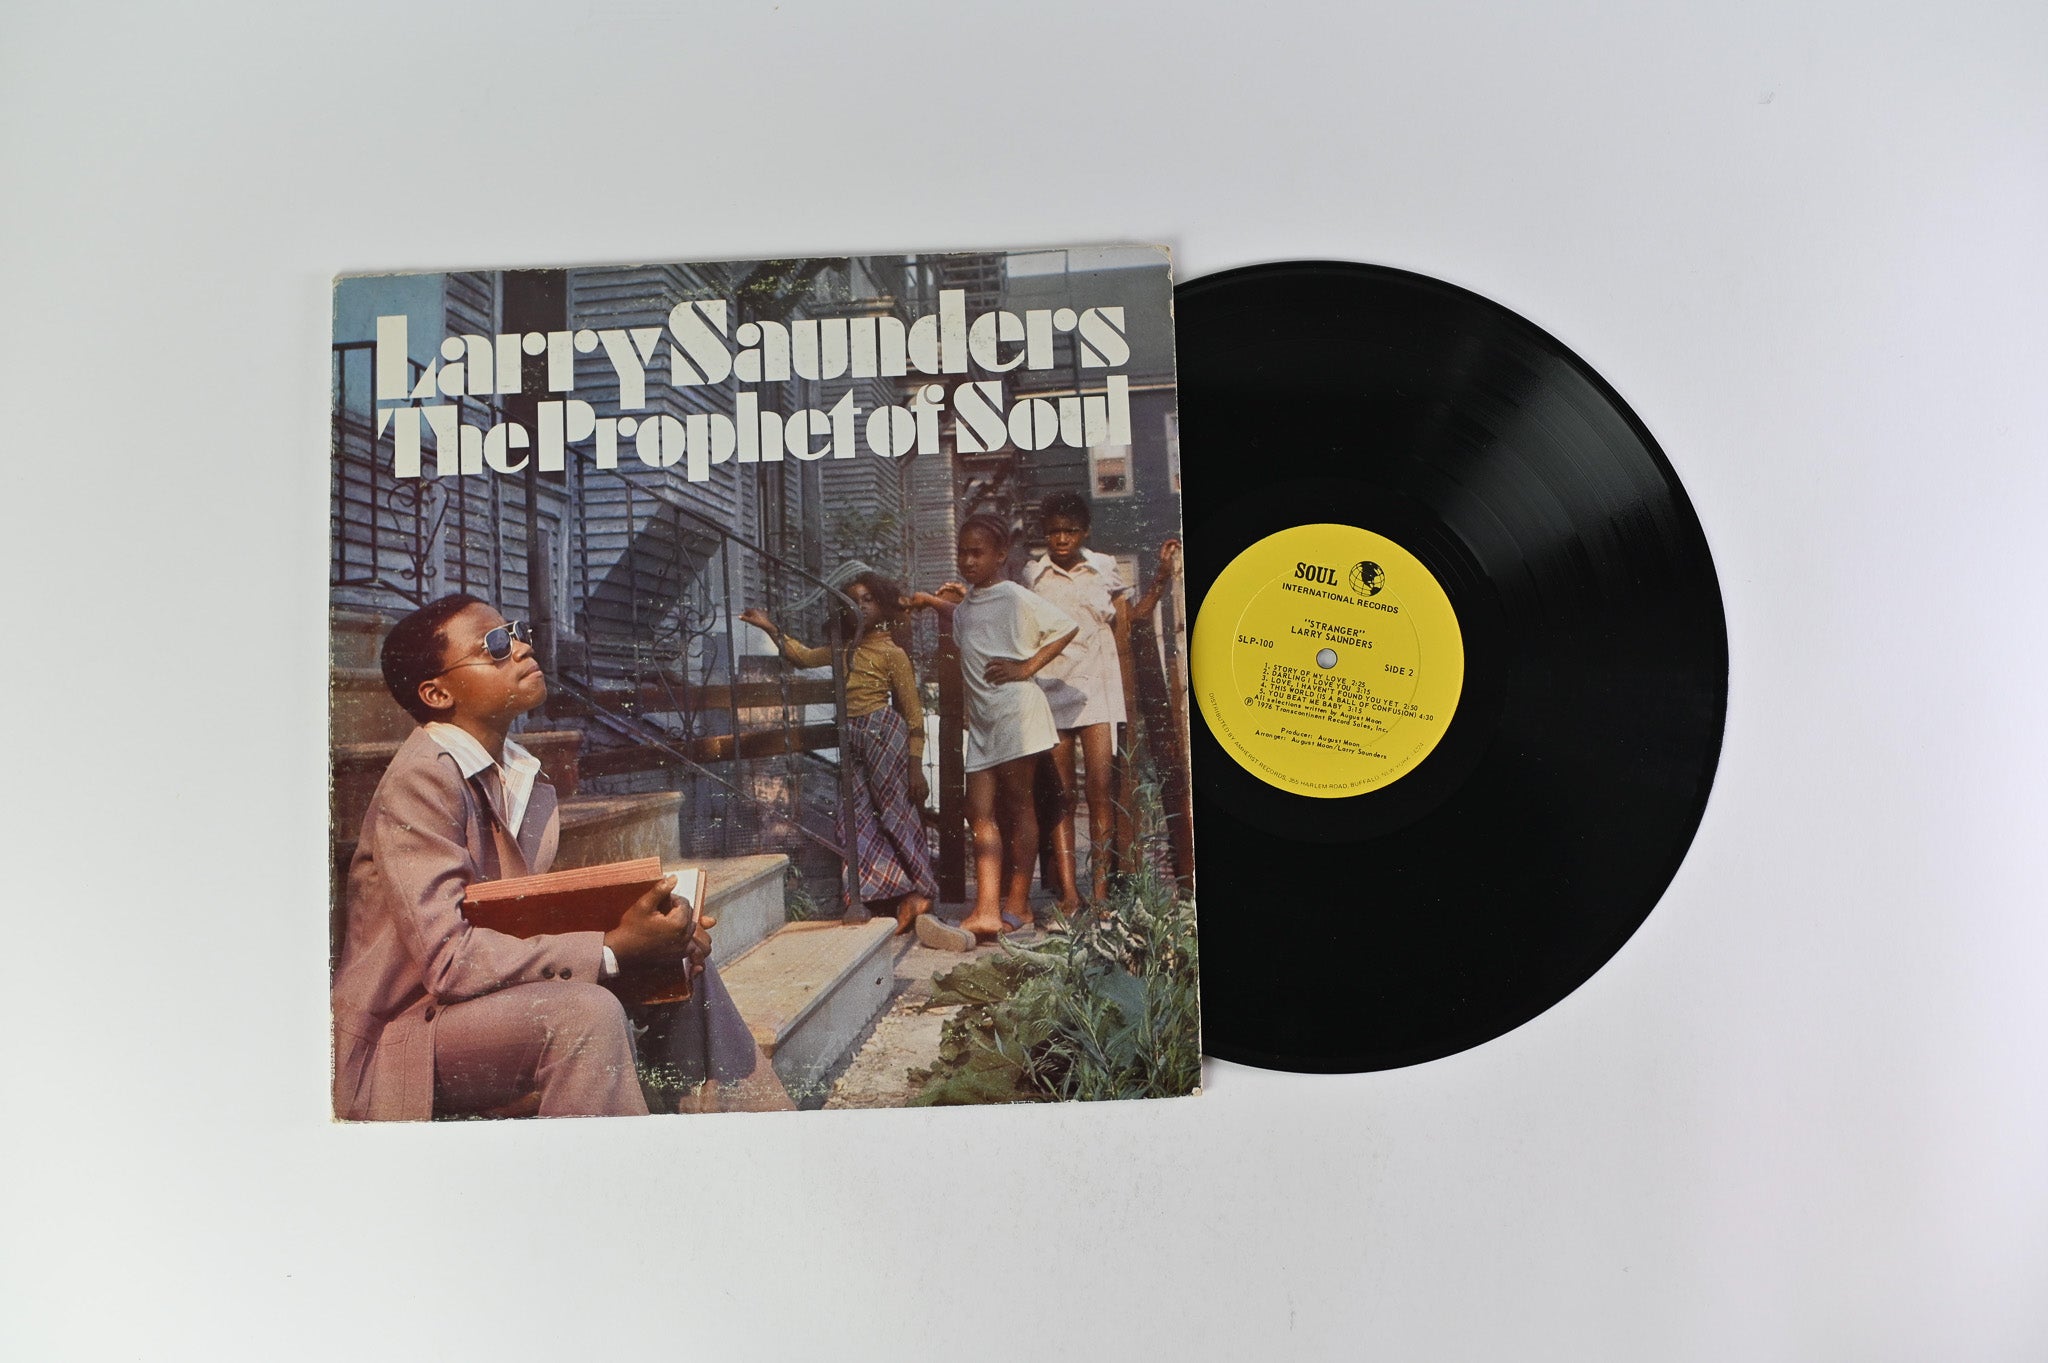 Larry Saunders The Prophet of Soul - Stranger on Soul International